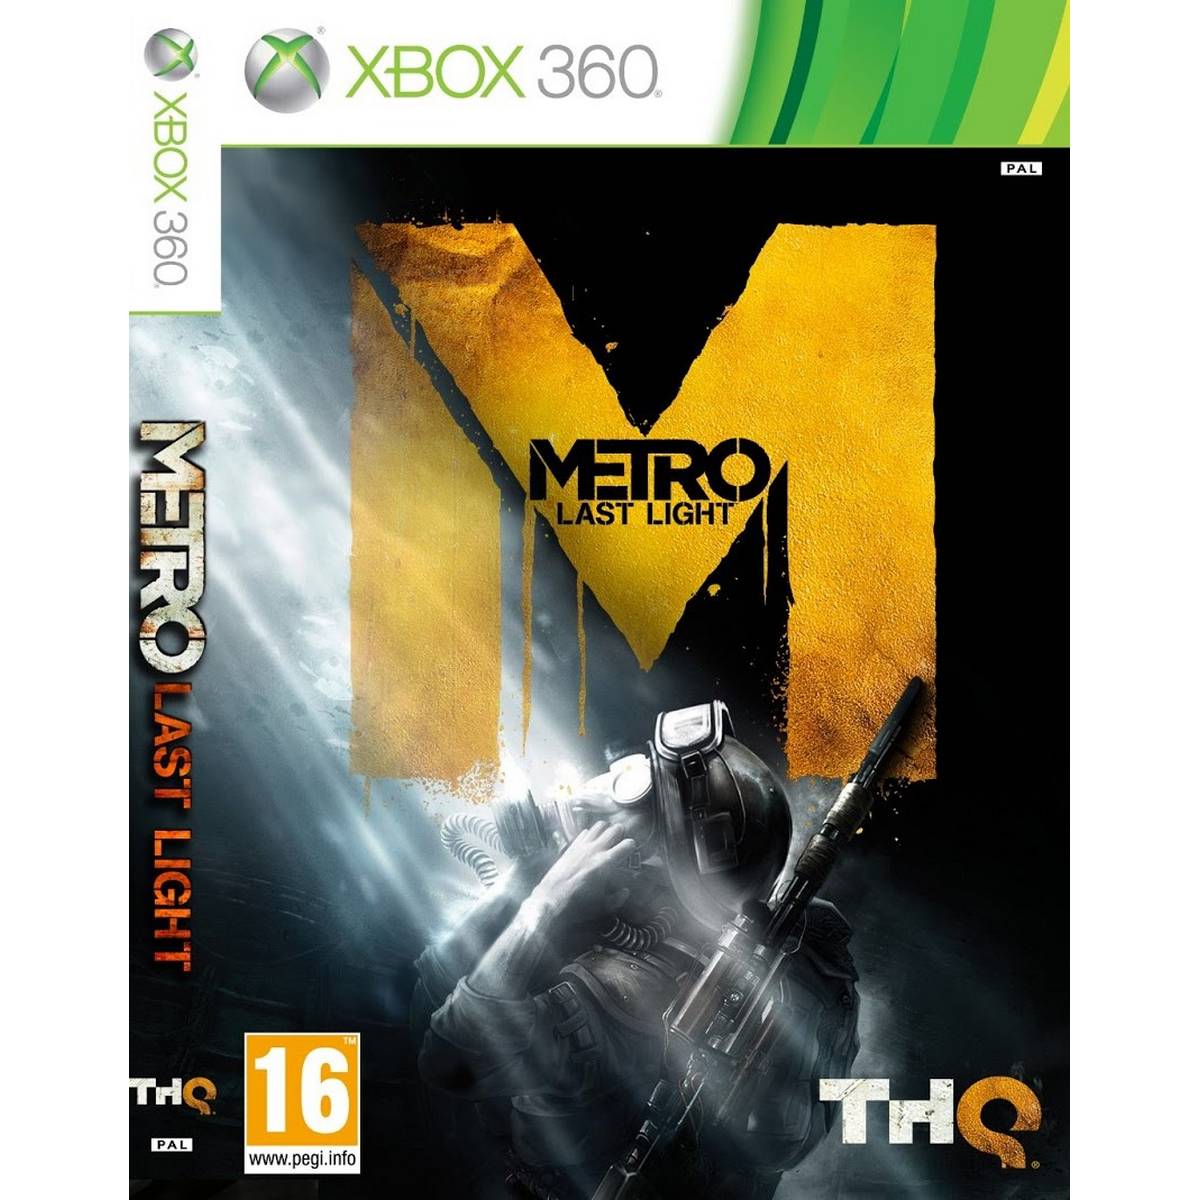 Метро 360 игры. Диск Xbox 360 Metro 2033. Игры на Xbox 360 Metro. Метро на хбокс 360. Metro 2033 Xbox 360.